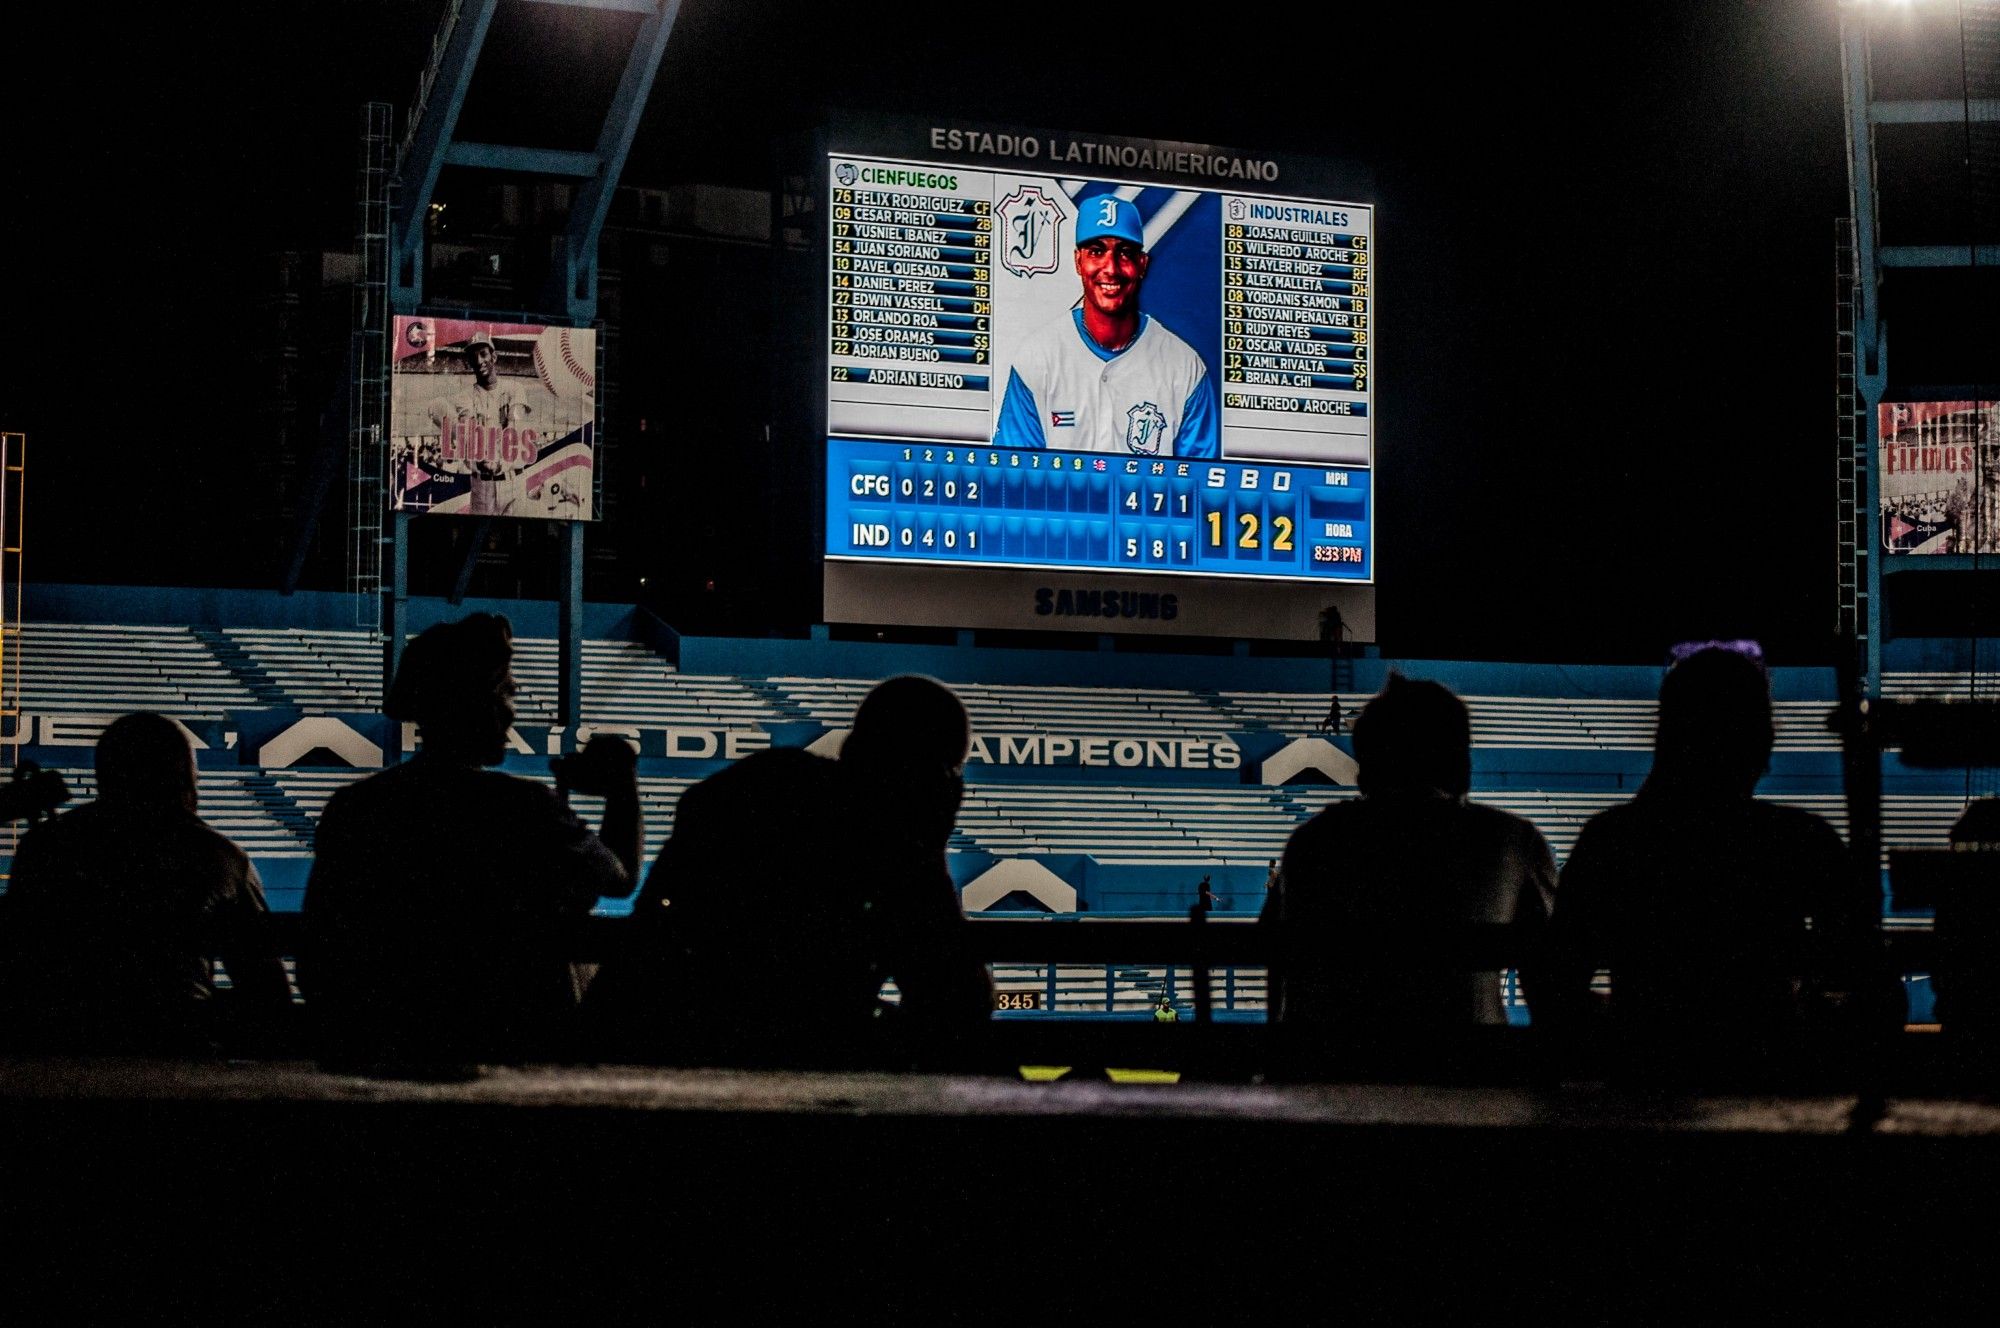 La nueva pantalla Samsung del Latino: una razón por la cual algunos visitarán el Estadio esta temporada. Fotos: Julio Batista